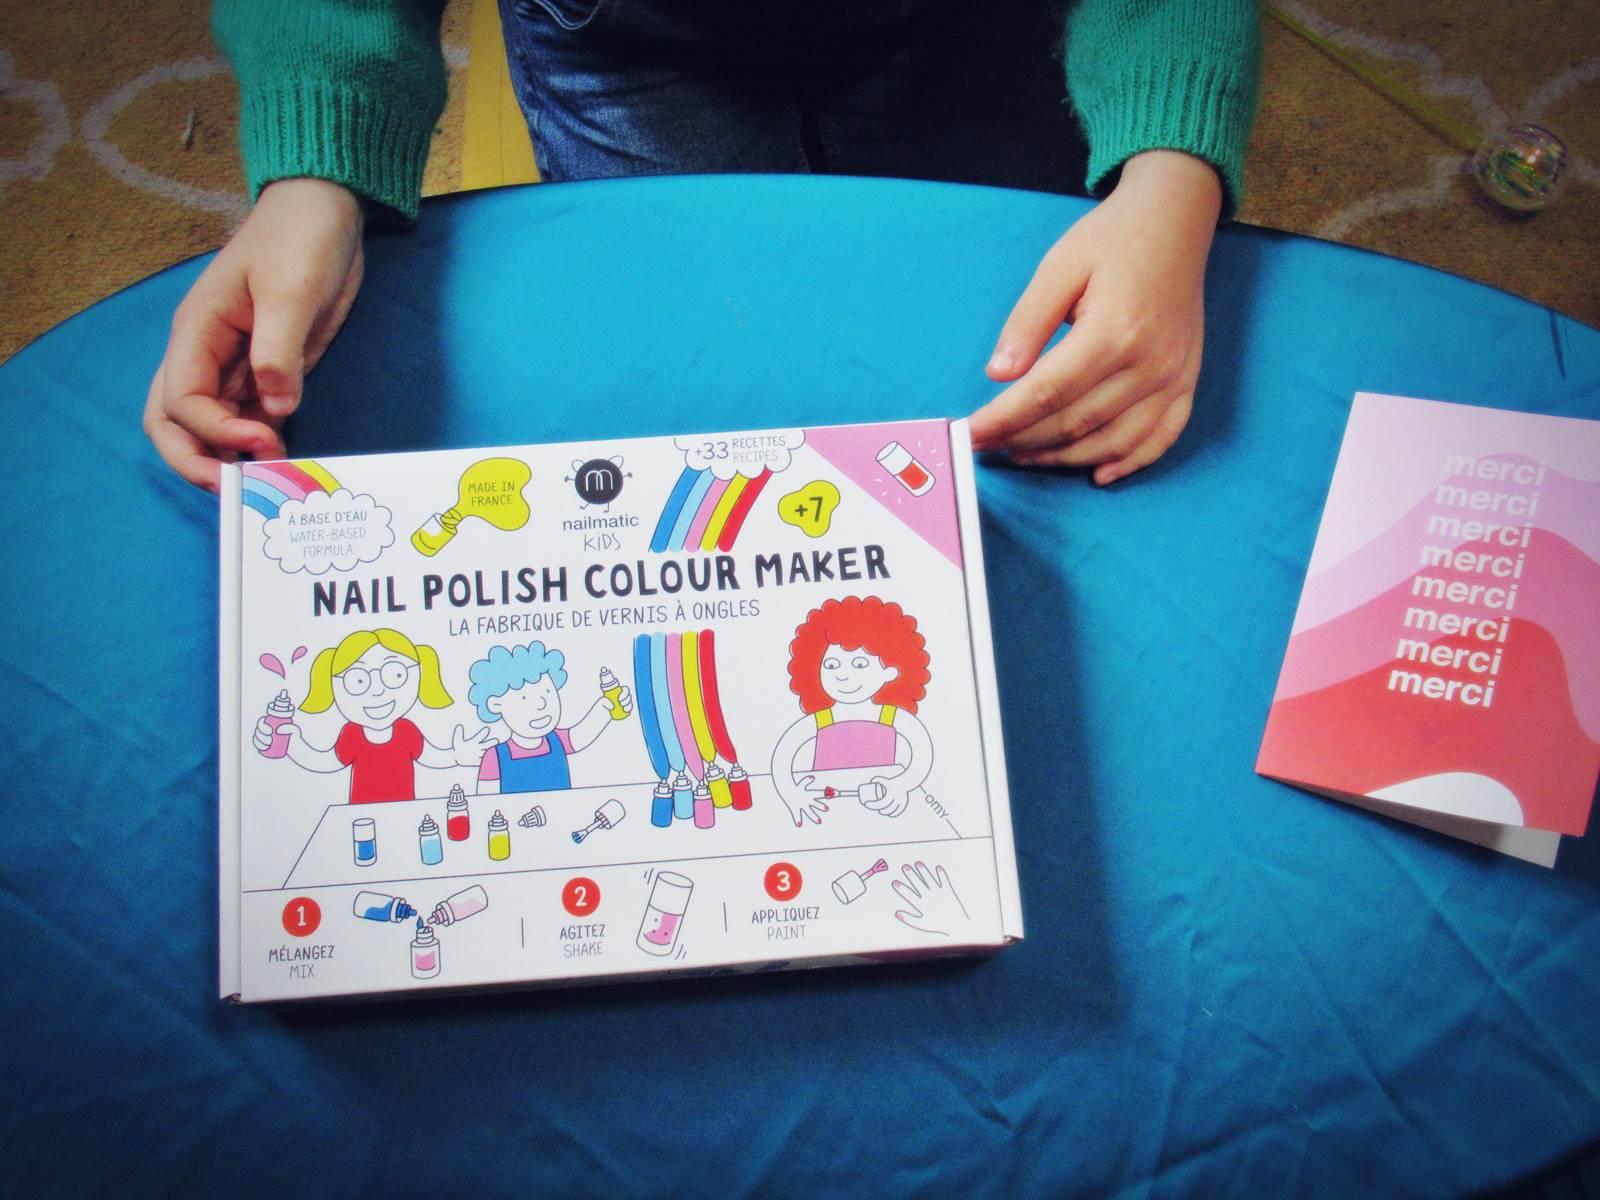 Nail polish colour maker